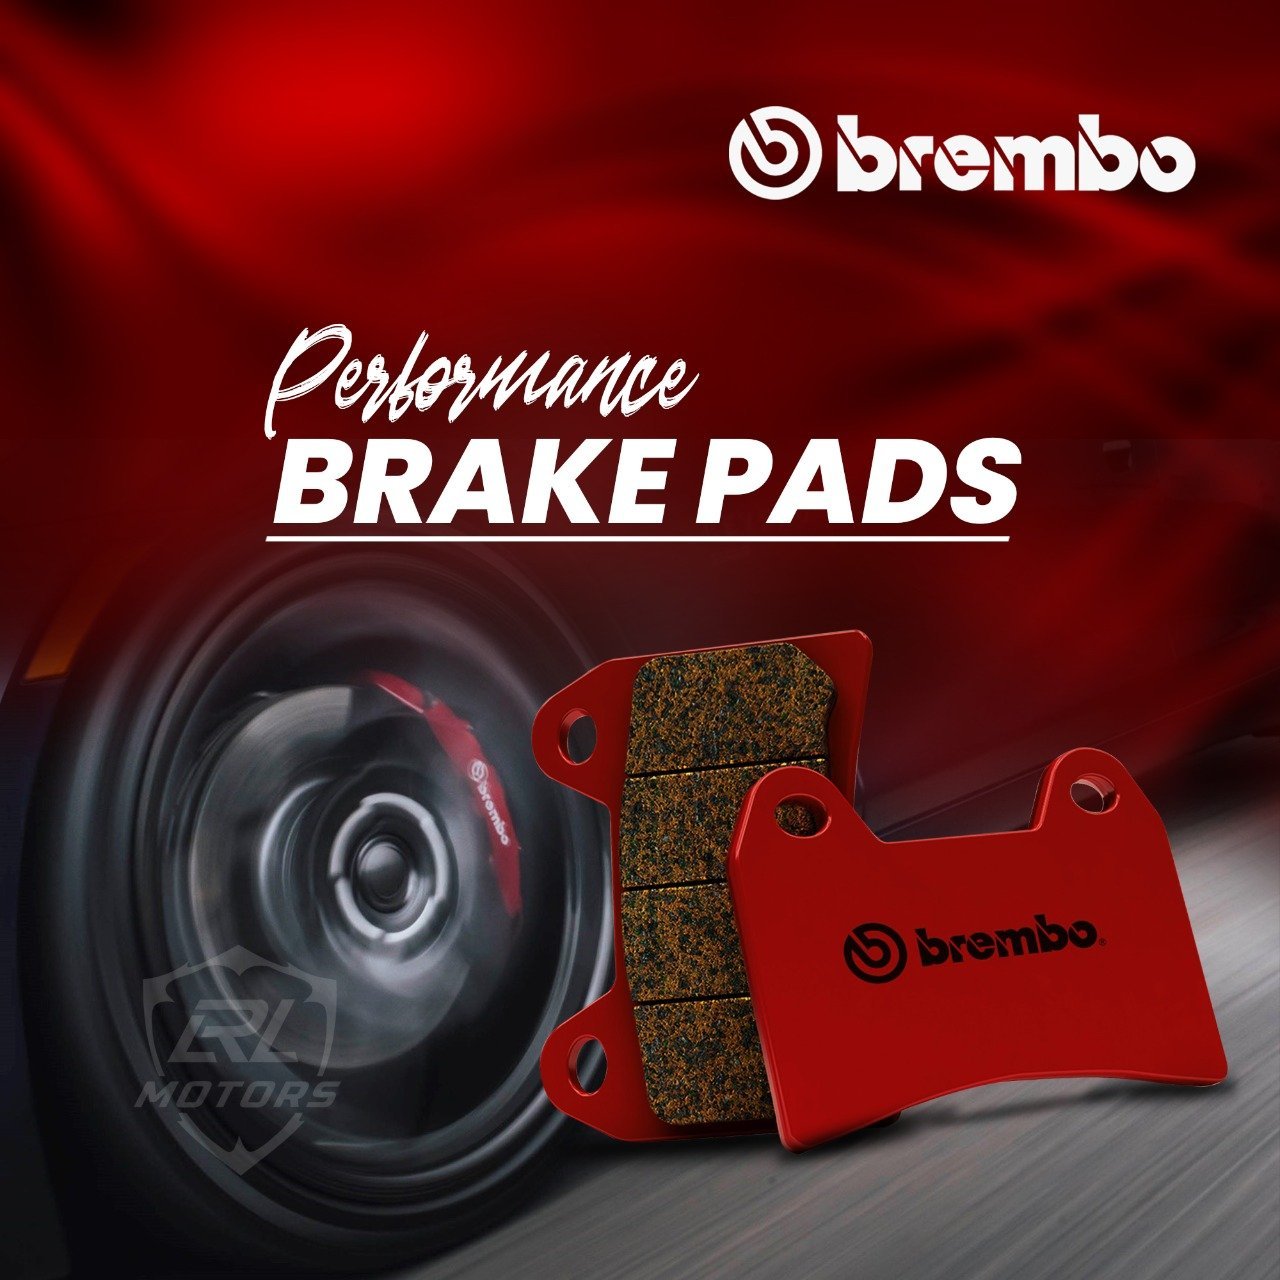 http://lrlmotors.com/cdn/shop/products/mitsubush-lancer-brembo-front-brake-pads-933546.jpg?v=1601918856